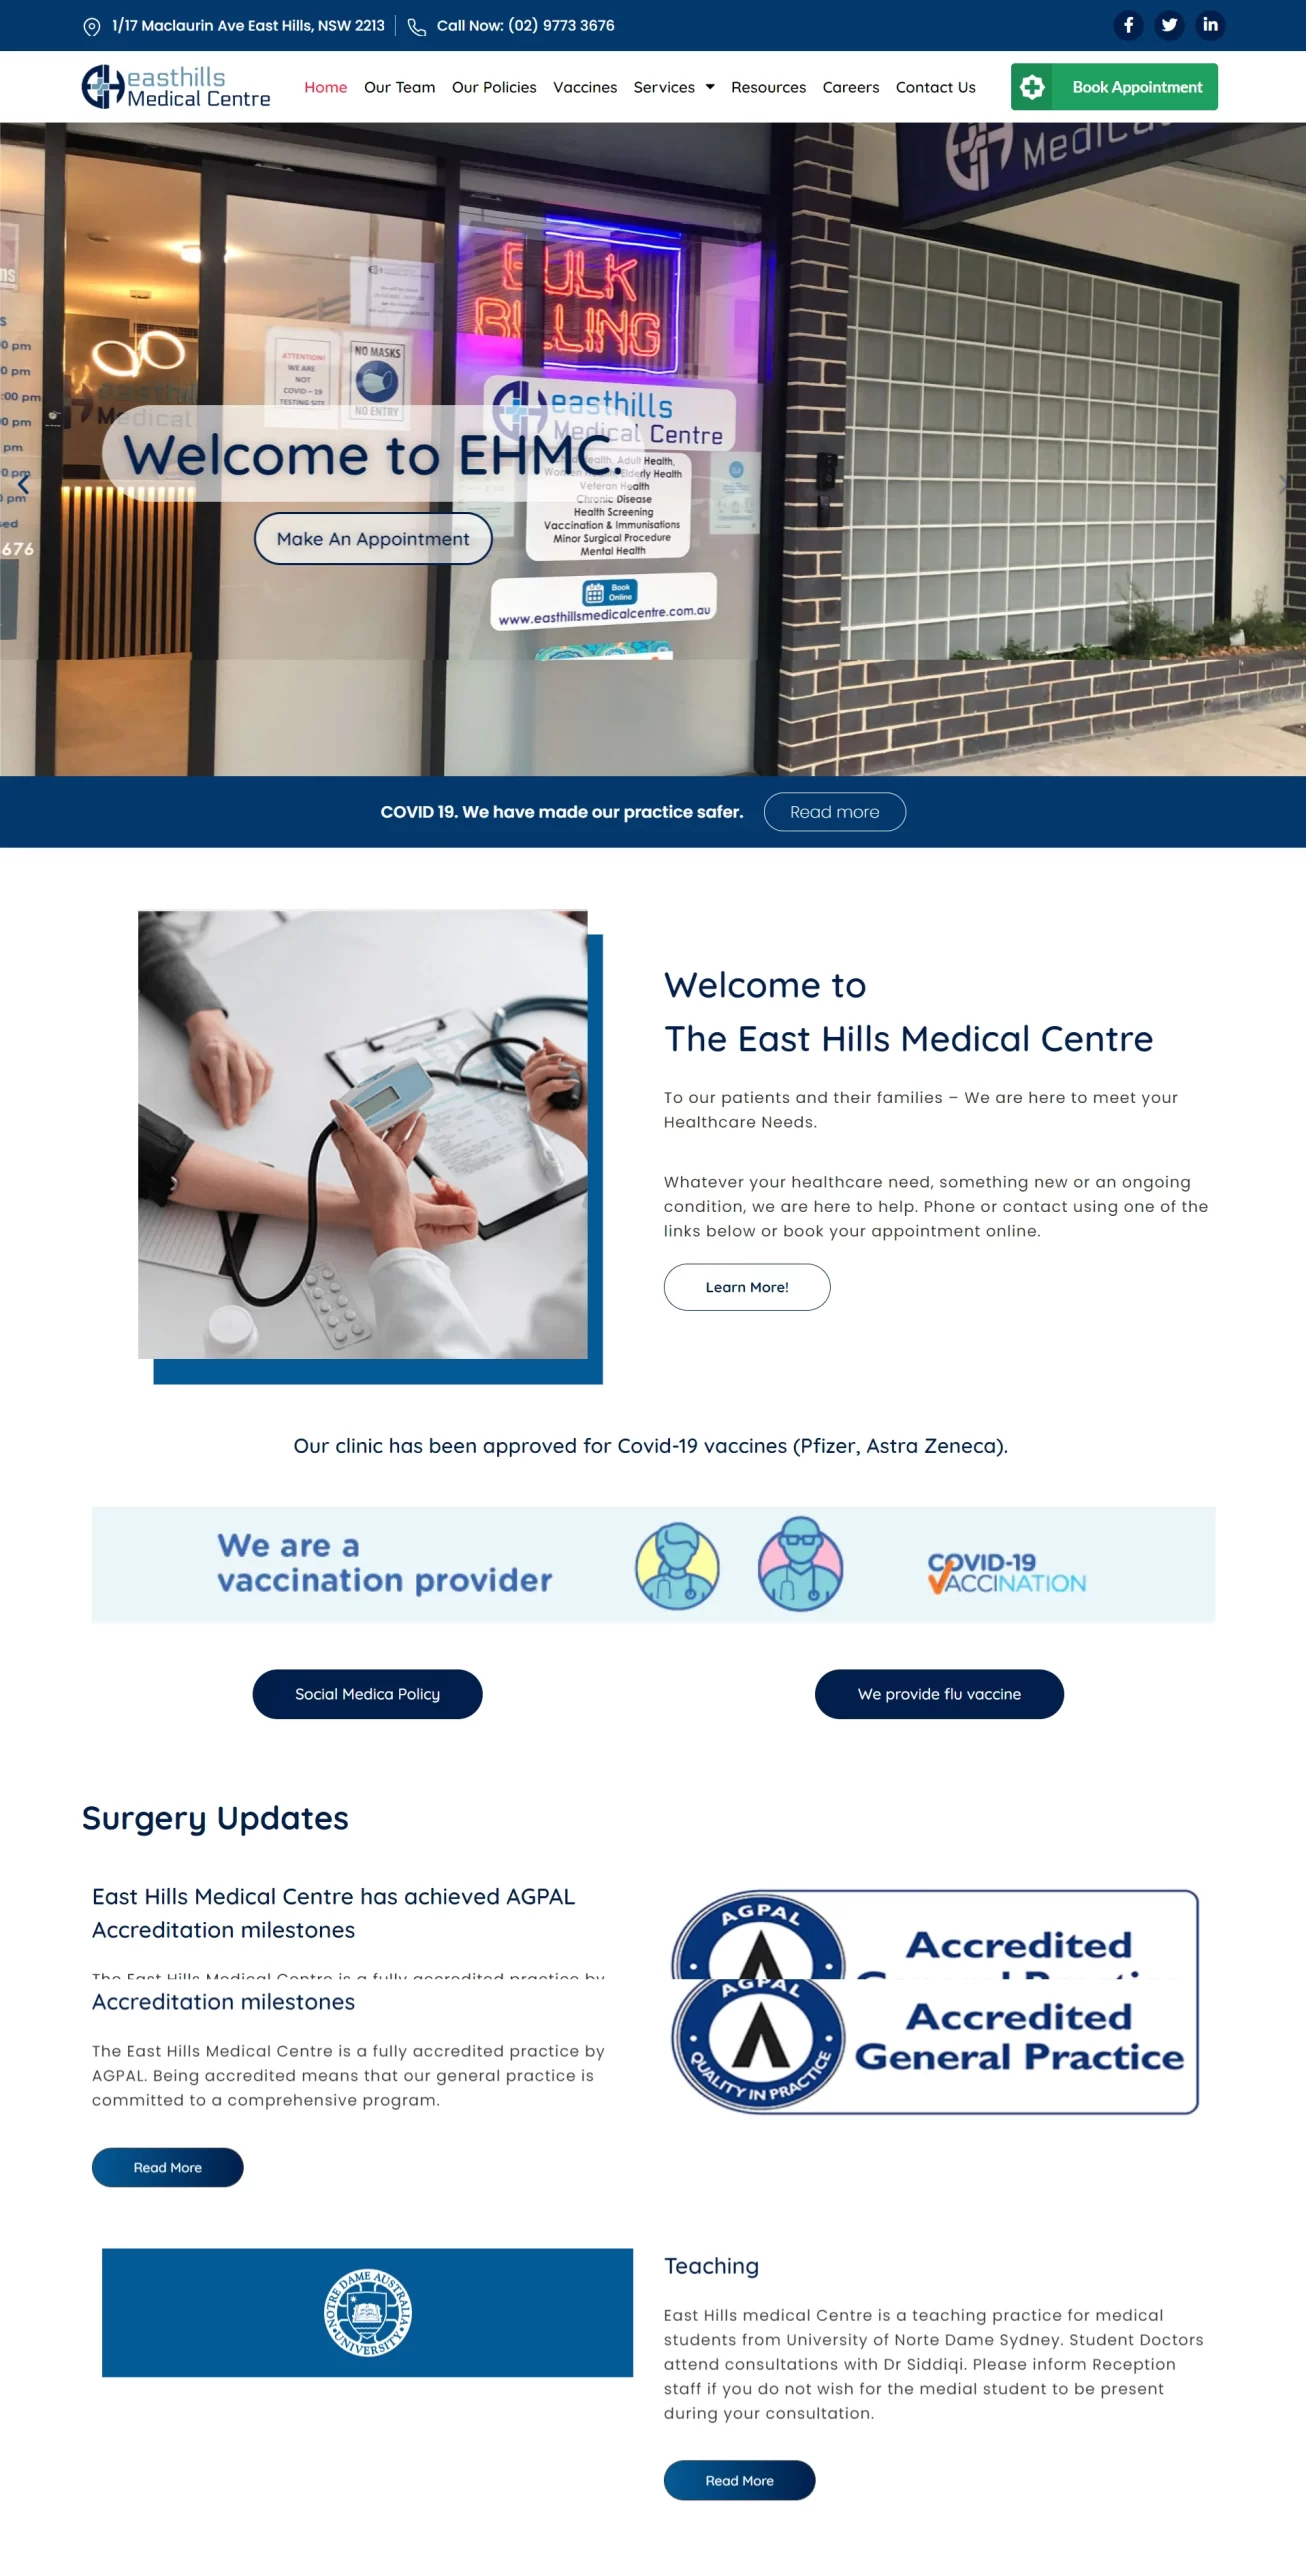 East hills medical centre